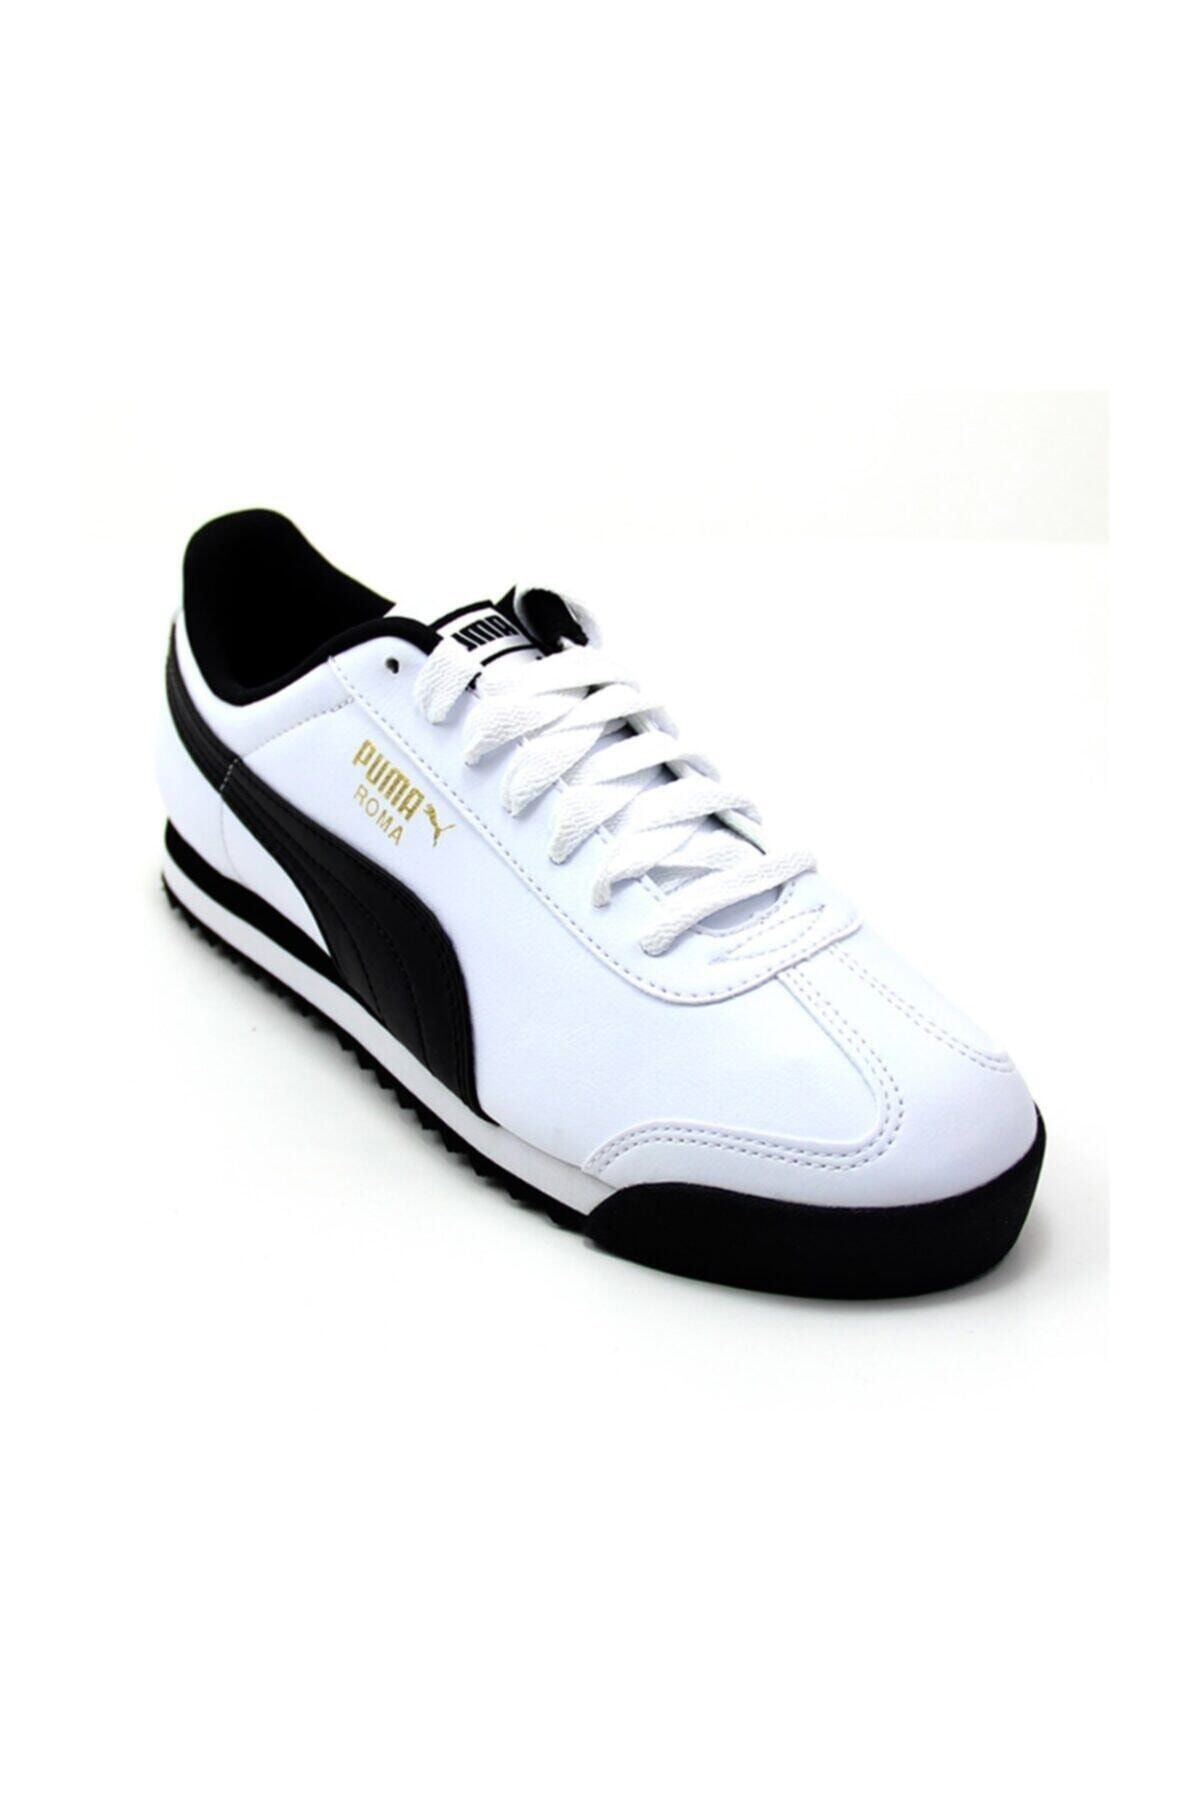 Puma Unisex Beyaz Roma Basic Spor Ayakkabı 35357204